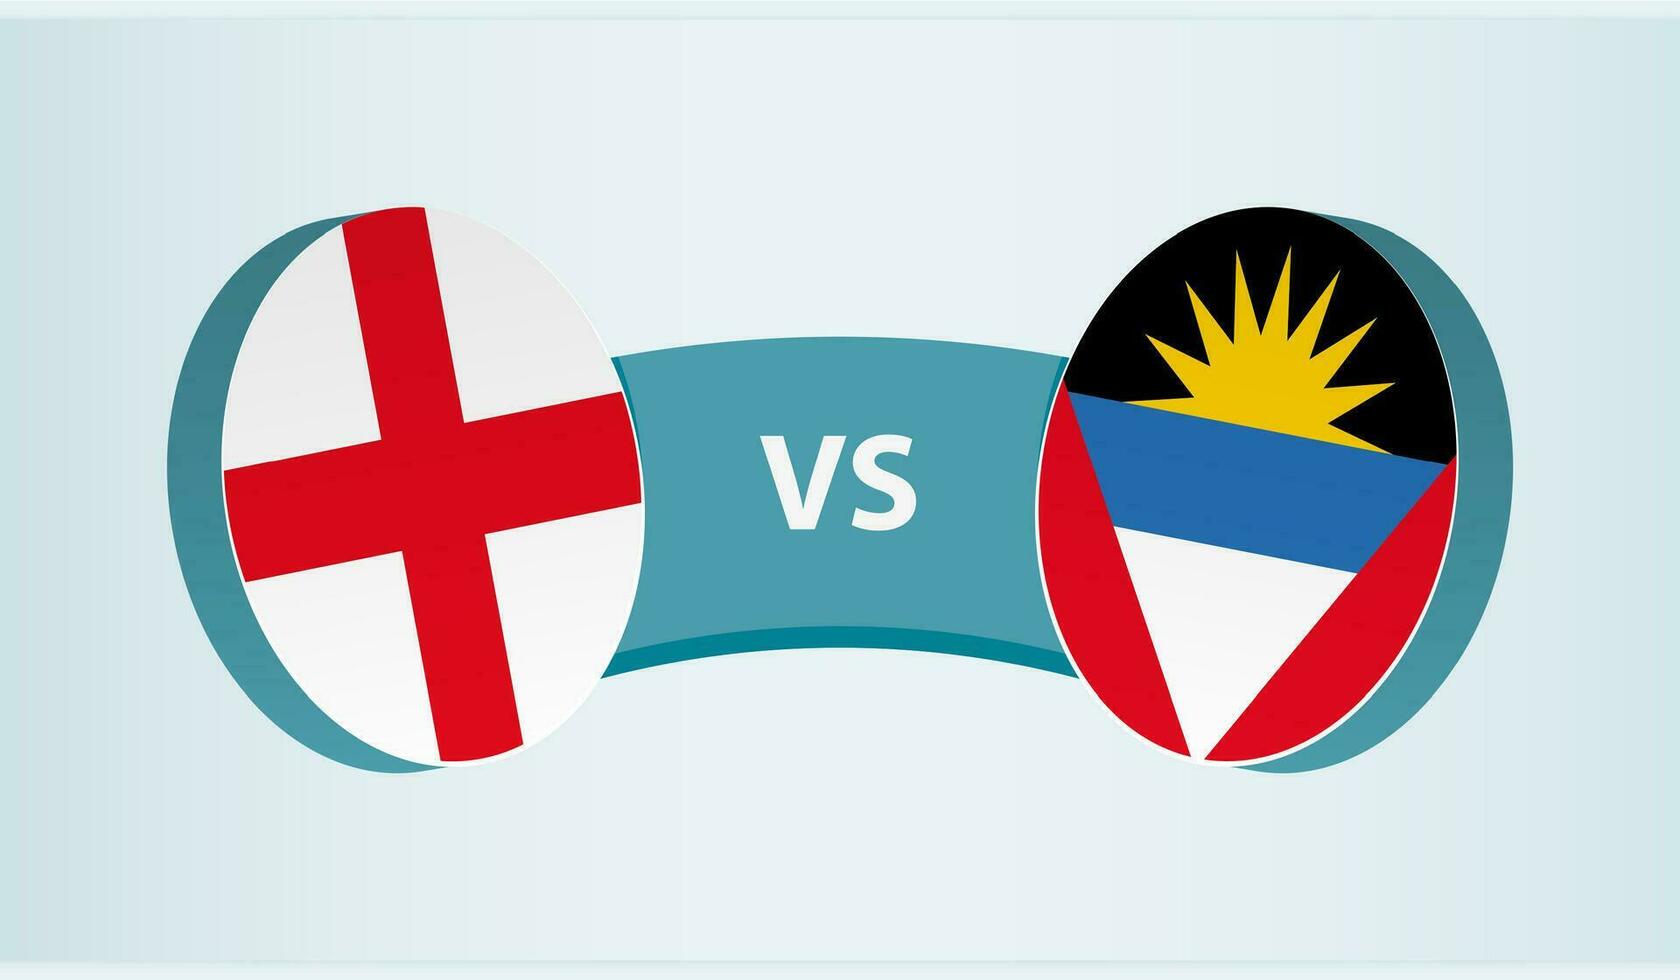 Inglaterra versus antigua y barbuda, equipo Deportes competencia concepto. vector